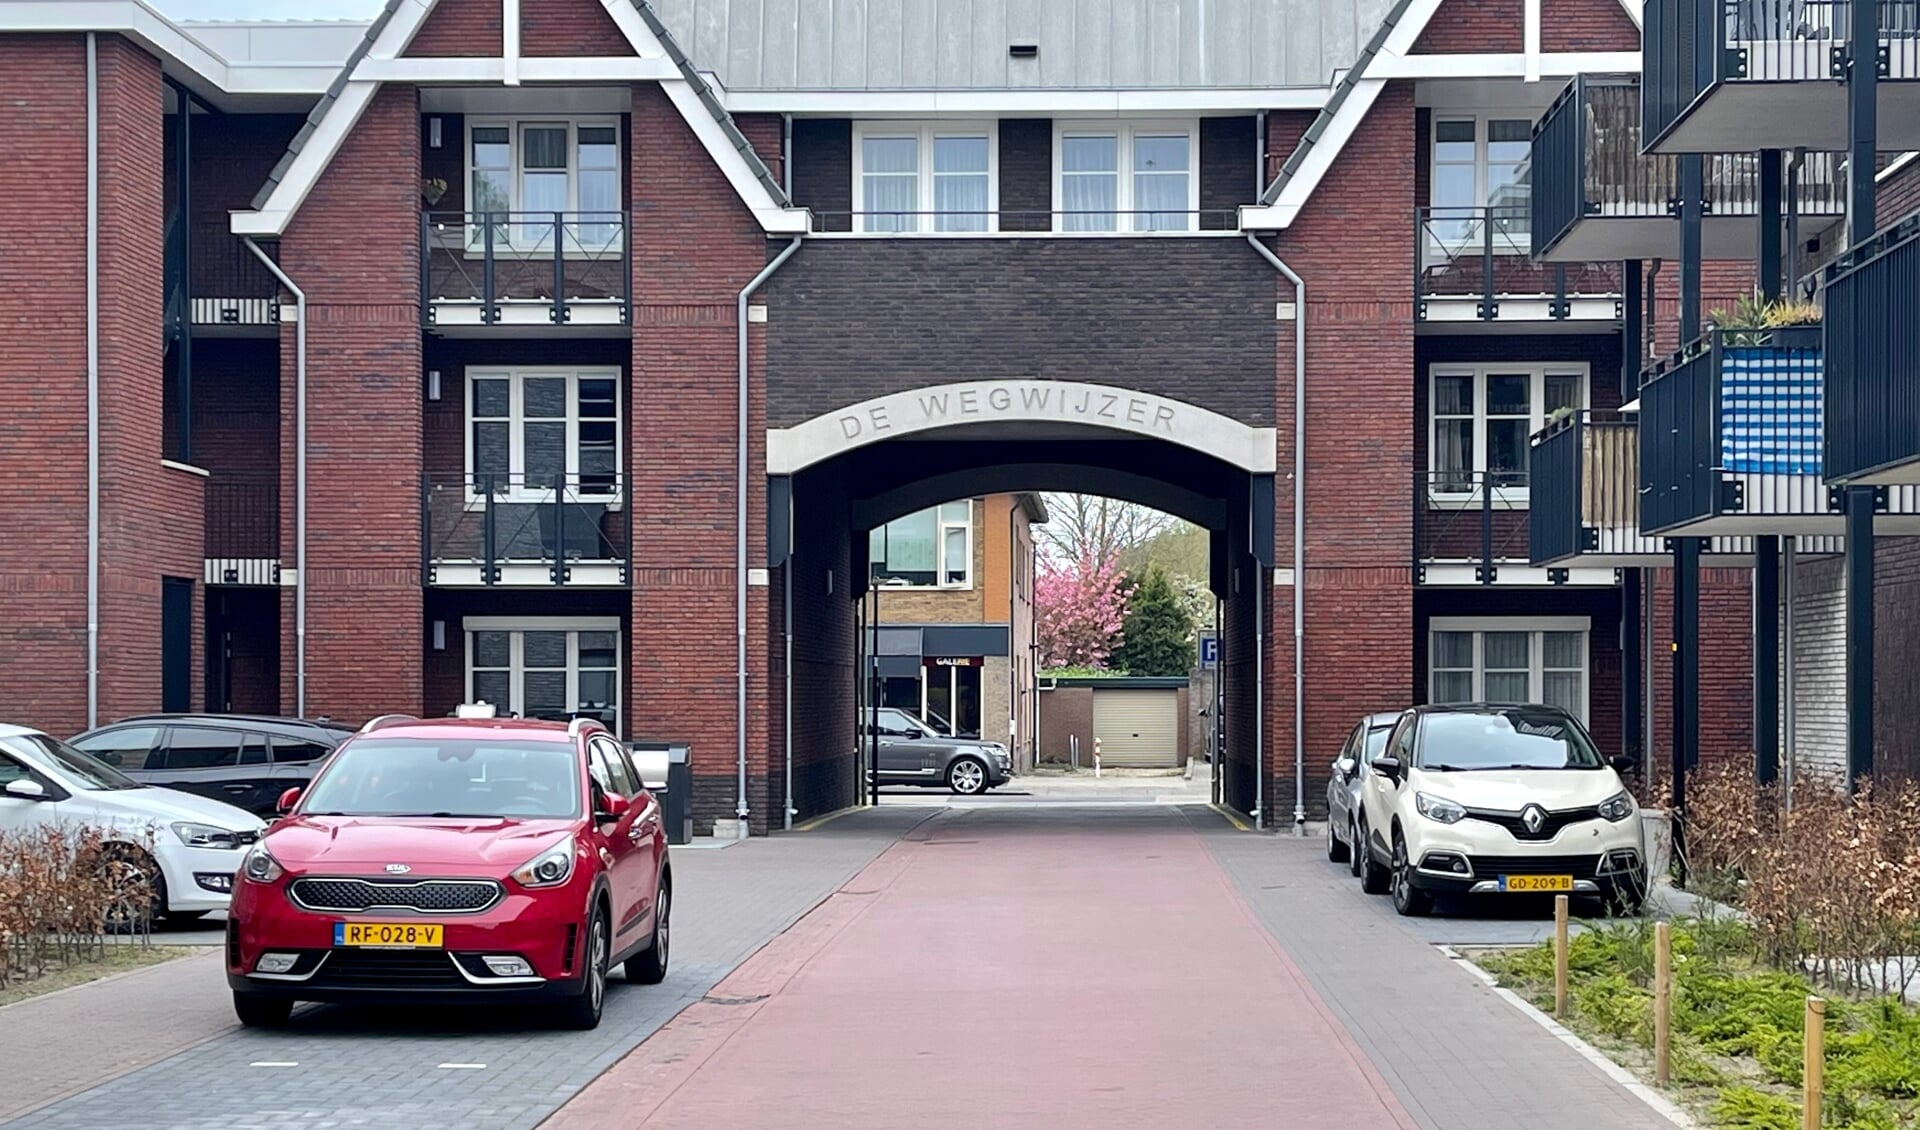 Binnen het wooncomplex De Wegwijzer is sprake van een tekort aan parkeerplaatsen volgens de vereniging van eigenaren.